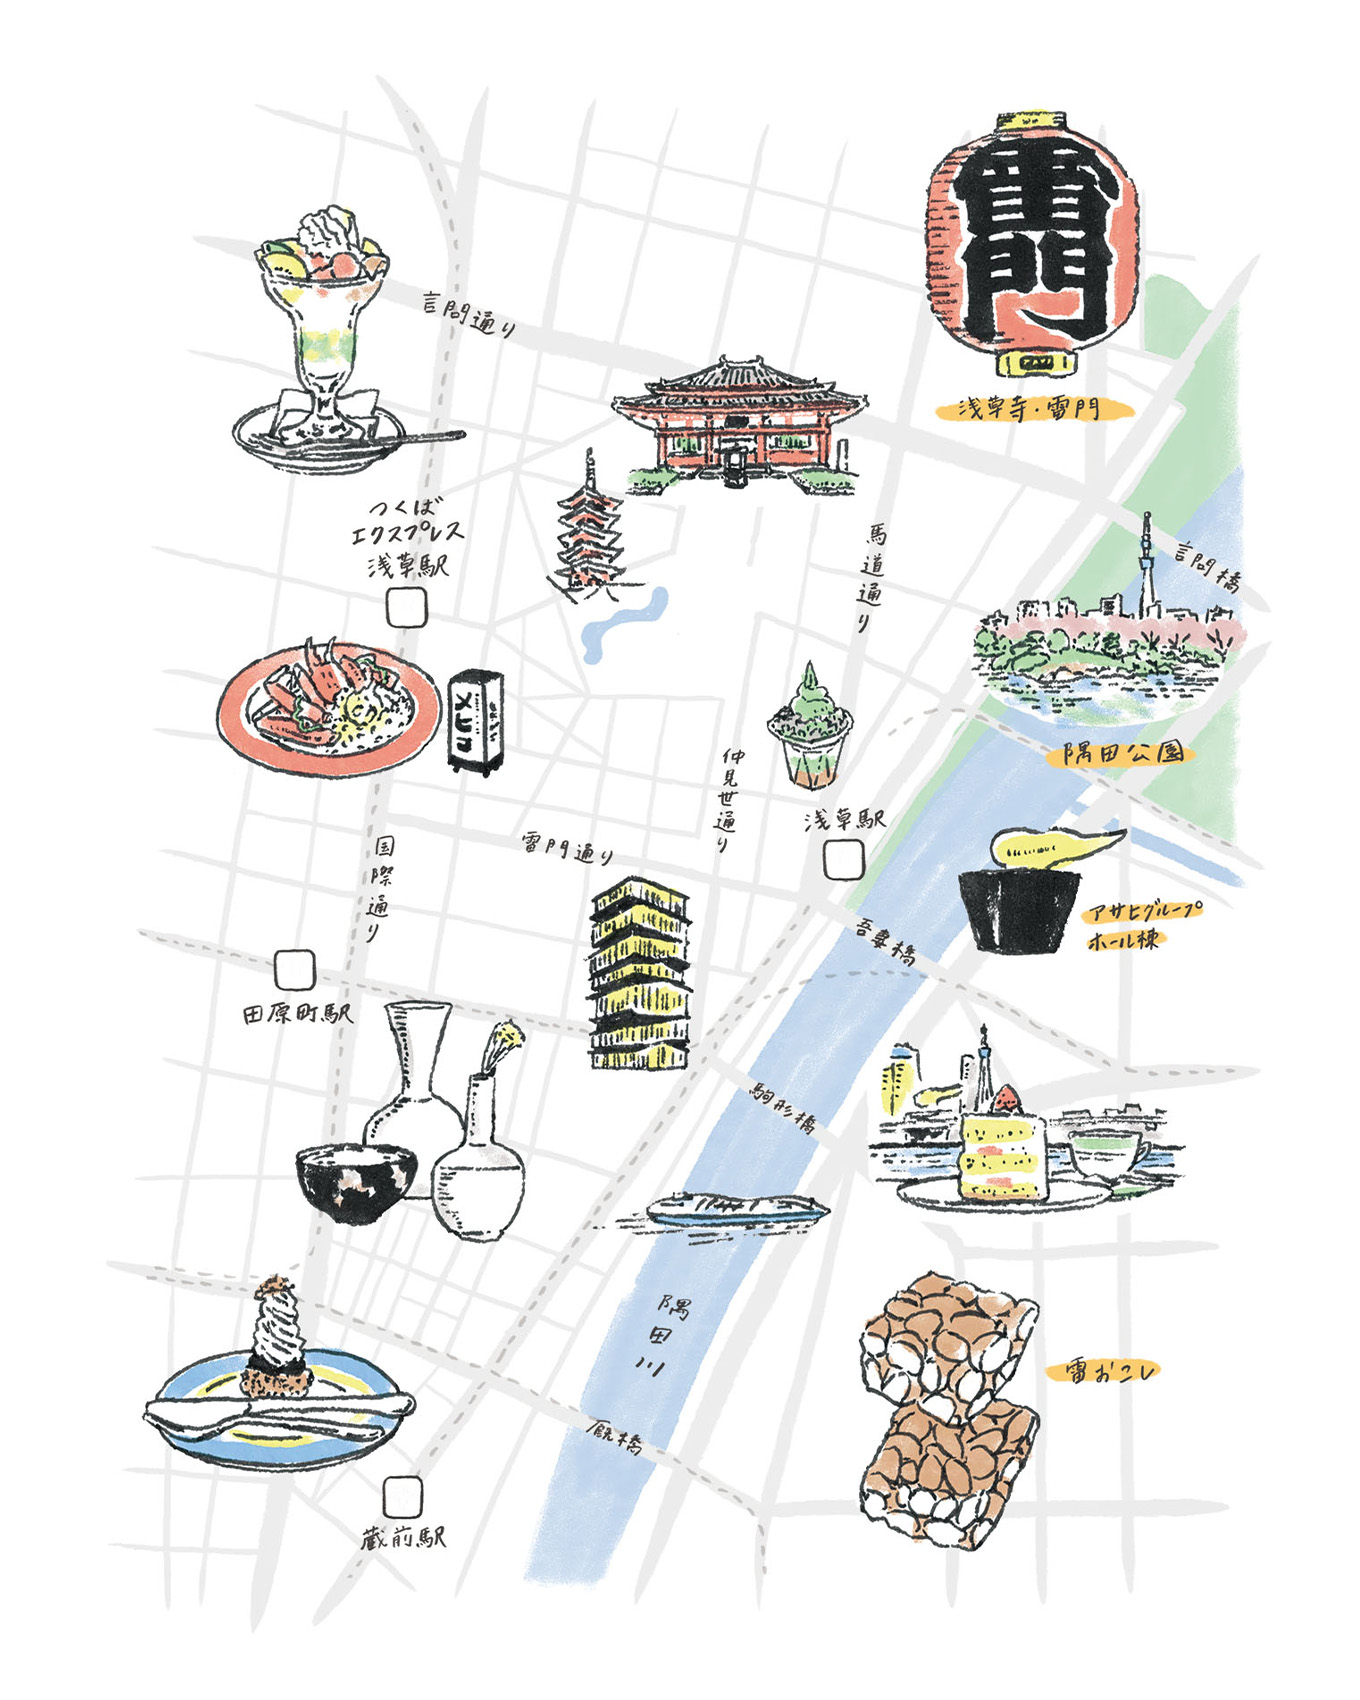 【いま巡りたい街】浅草…伝統と新鮮が共存する街のとっておきスポッ…